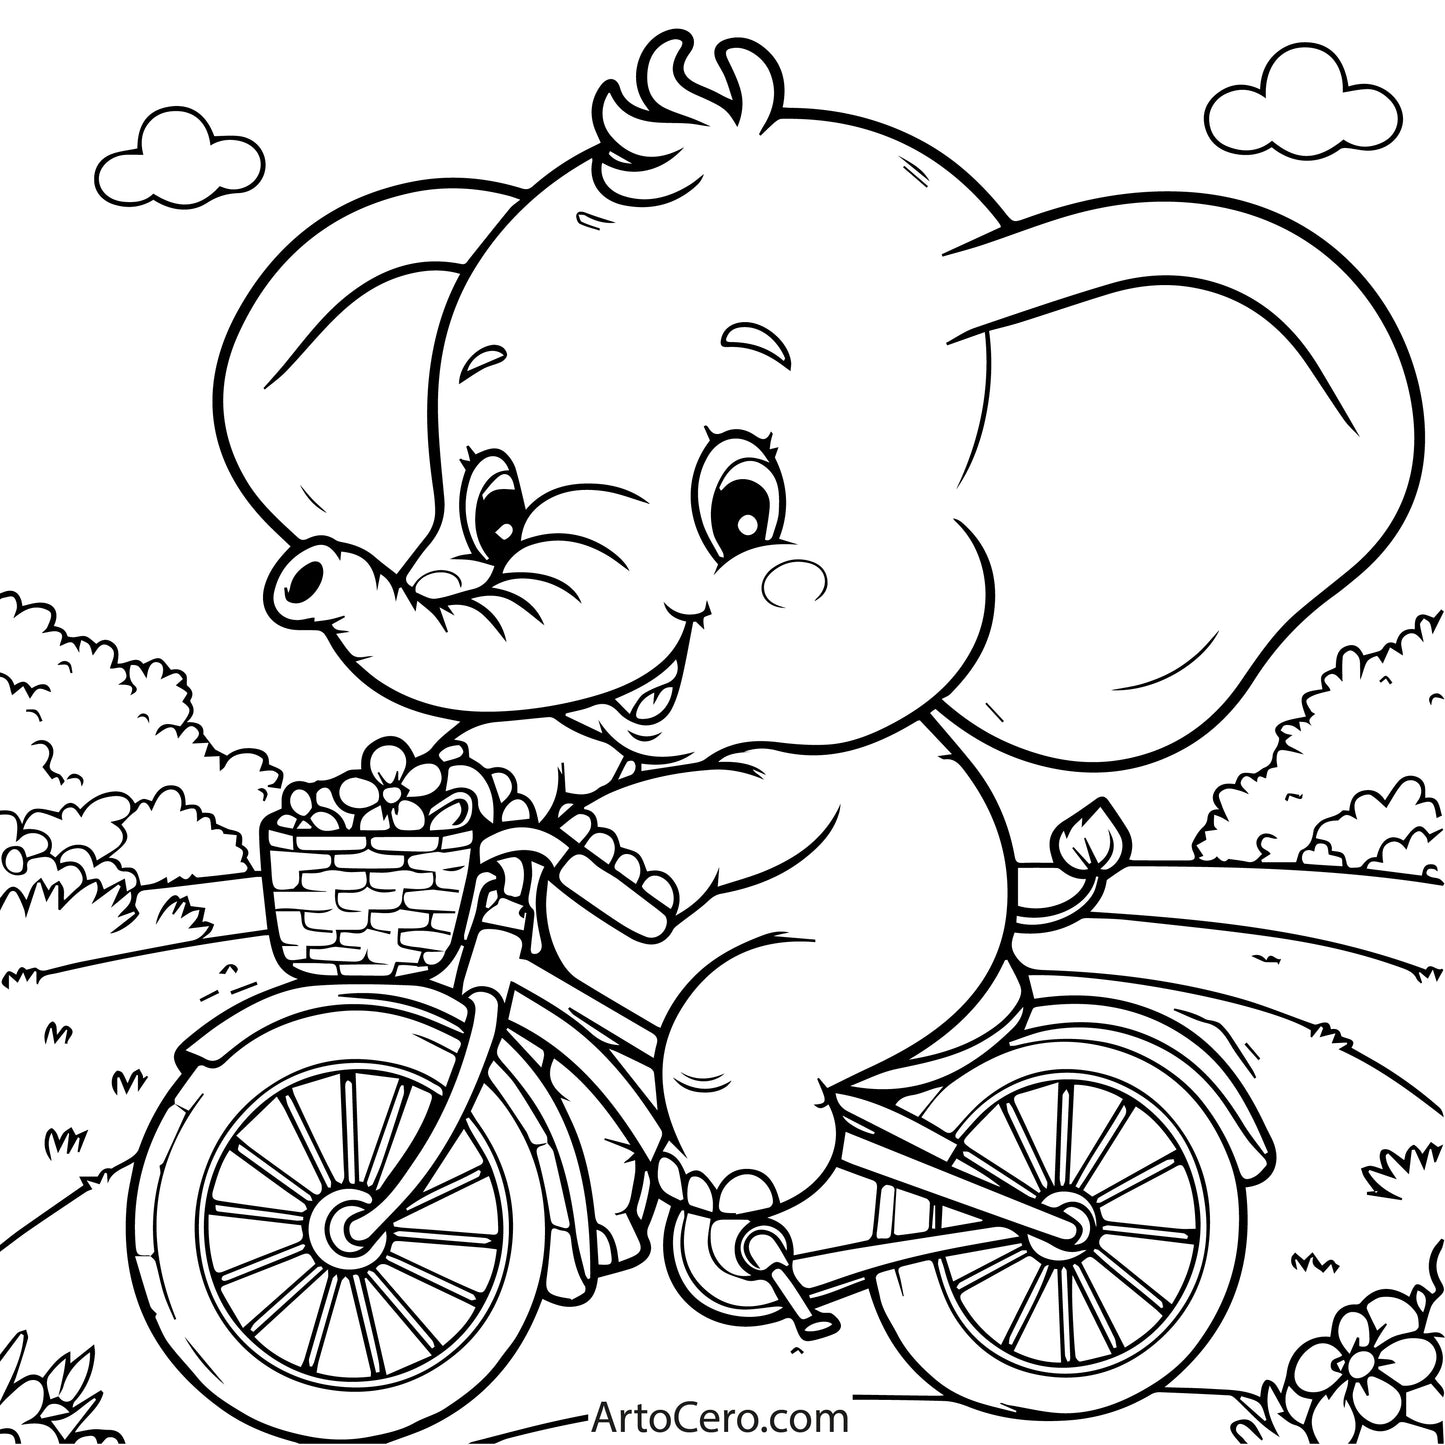 Elephant Coloring Digital Book Vol.1 - ArtoCero.com